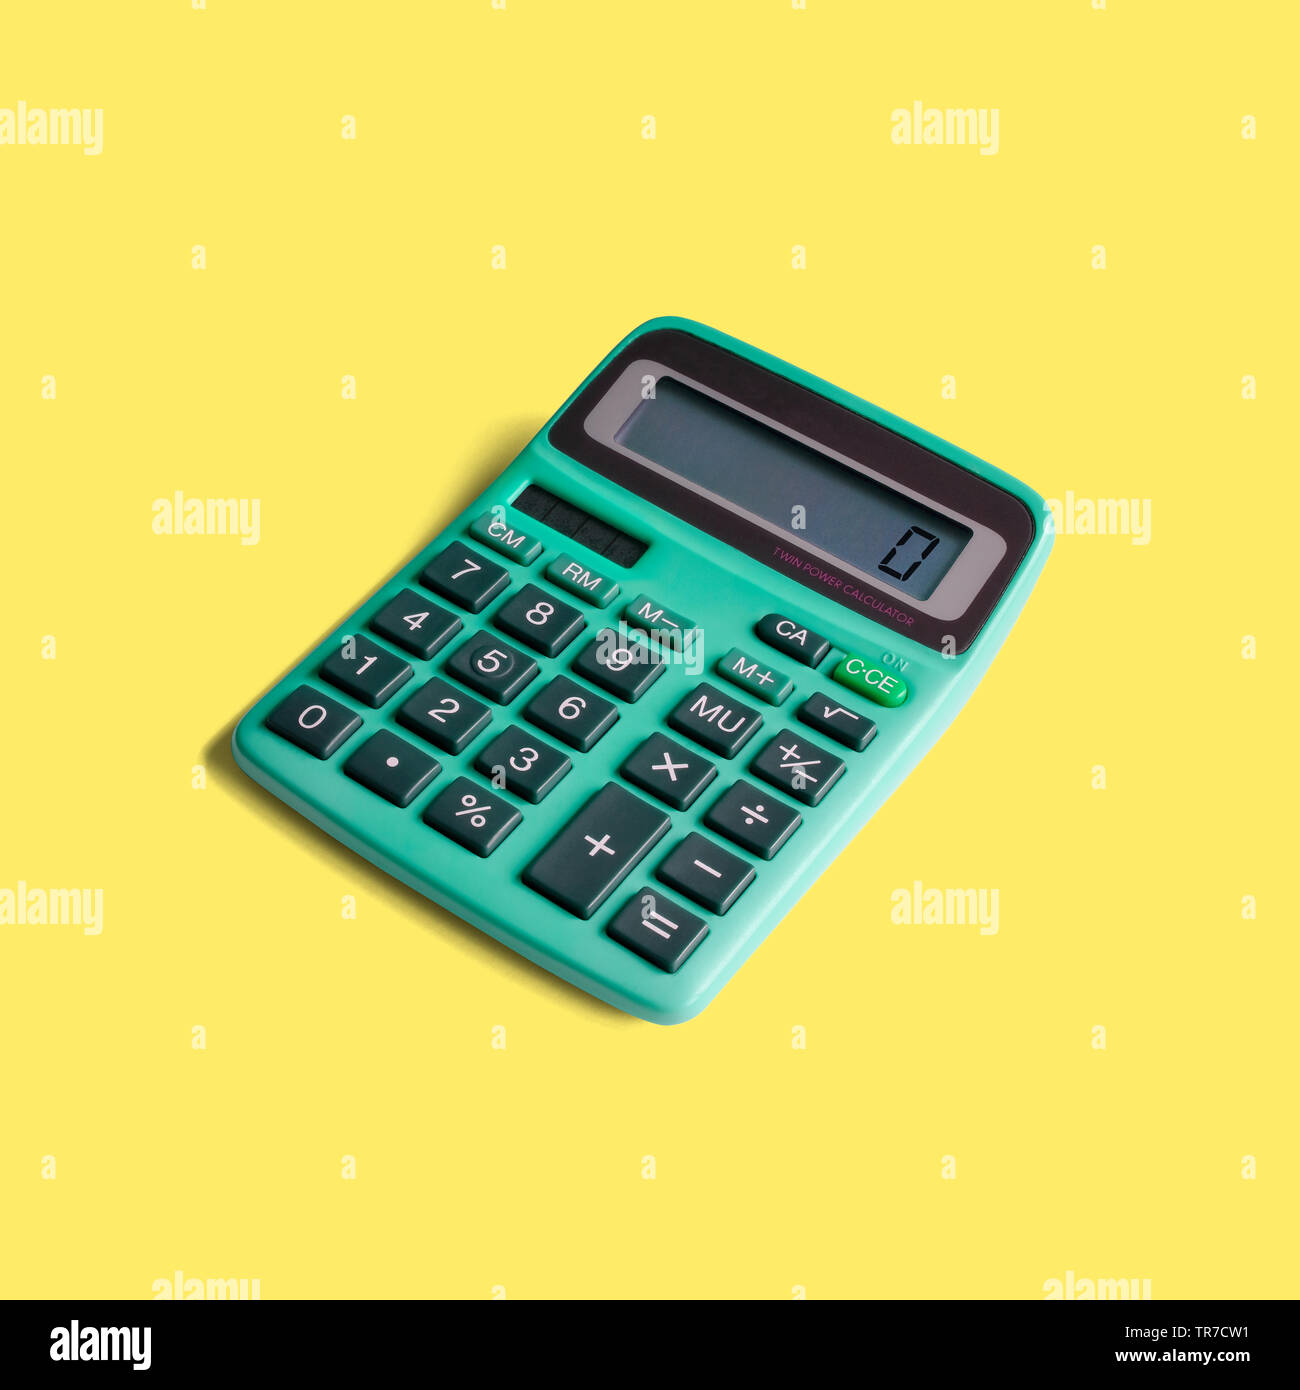 Vintage Taschenrechner, sowohl mit Batterie- und Solarbetrieb, und mathematische Operationen beschränkt auf Multiplikation, Division, Addition und Subtraktion Stockfoto